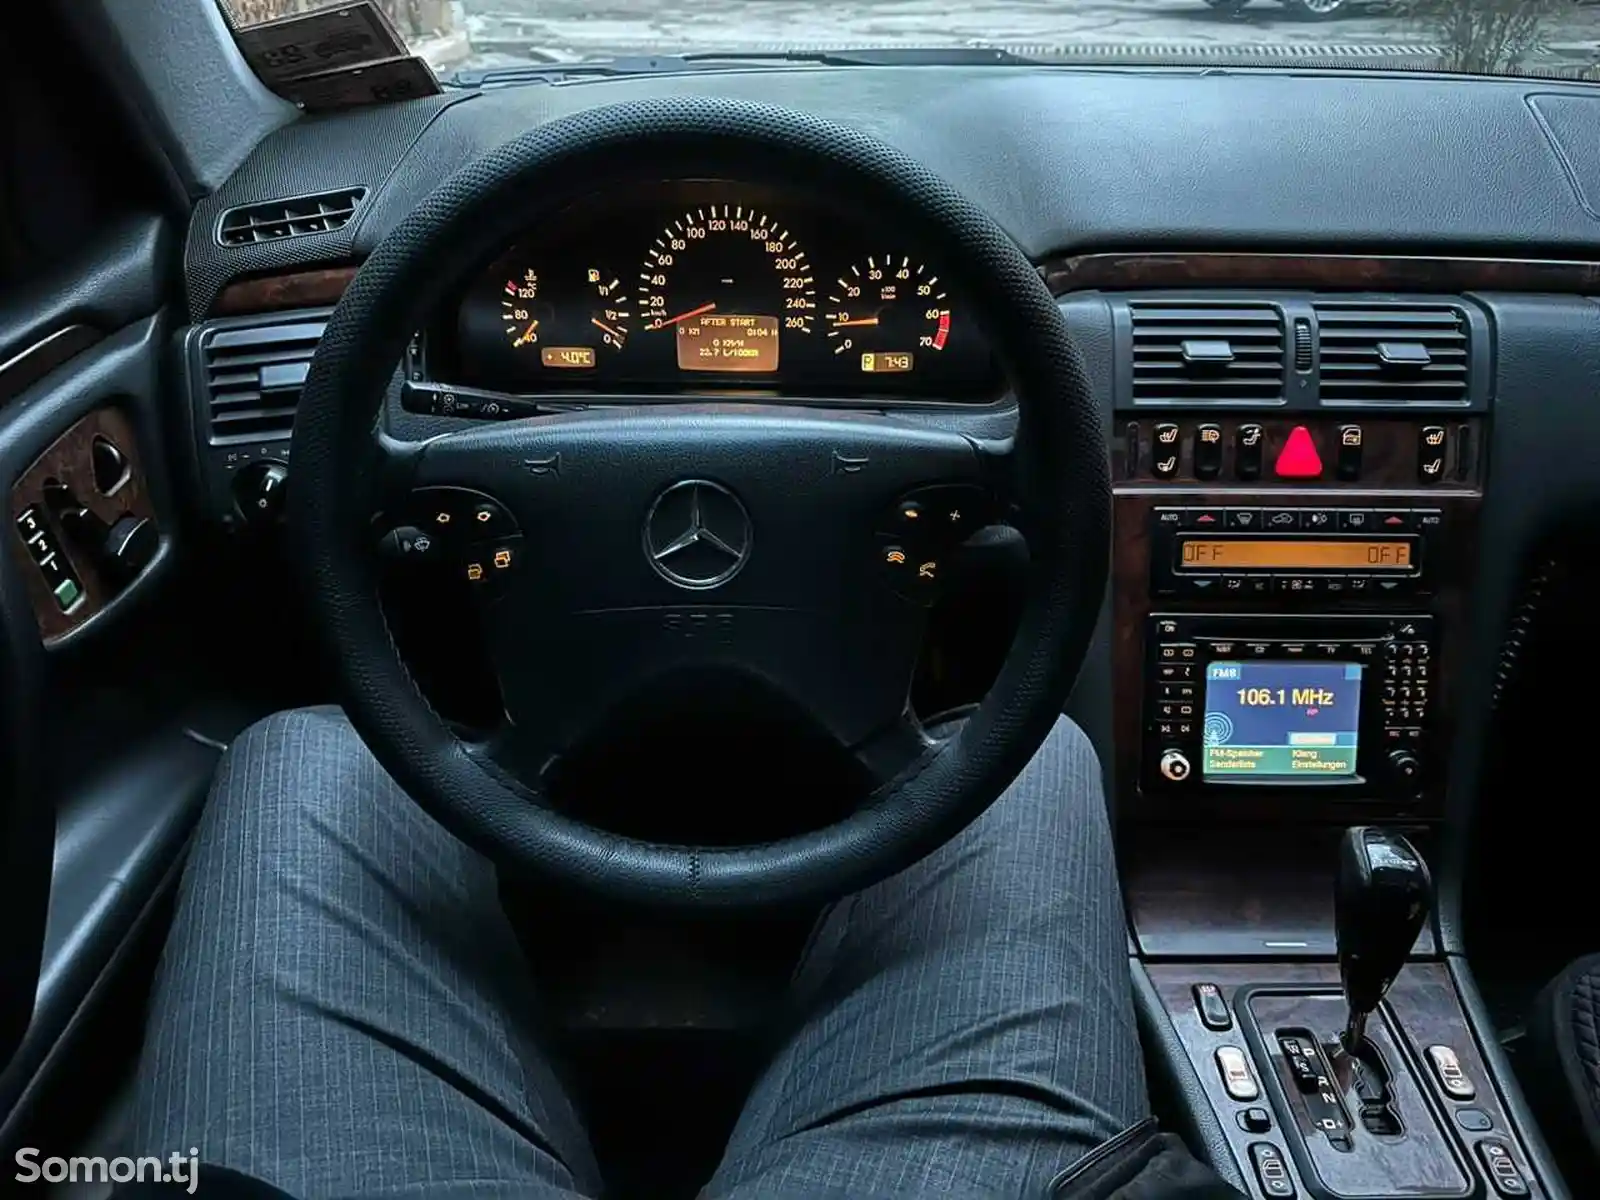 Mercedes-Benz E class, 2001-1